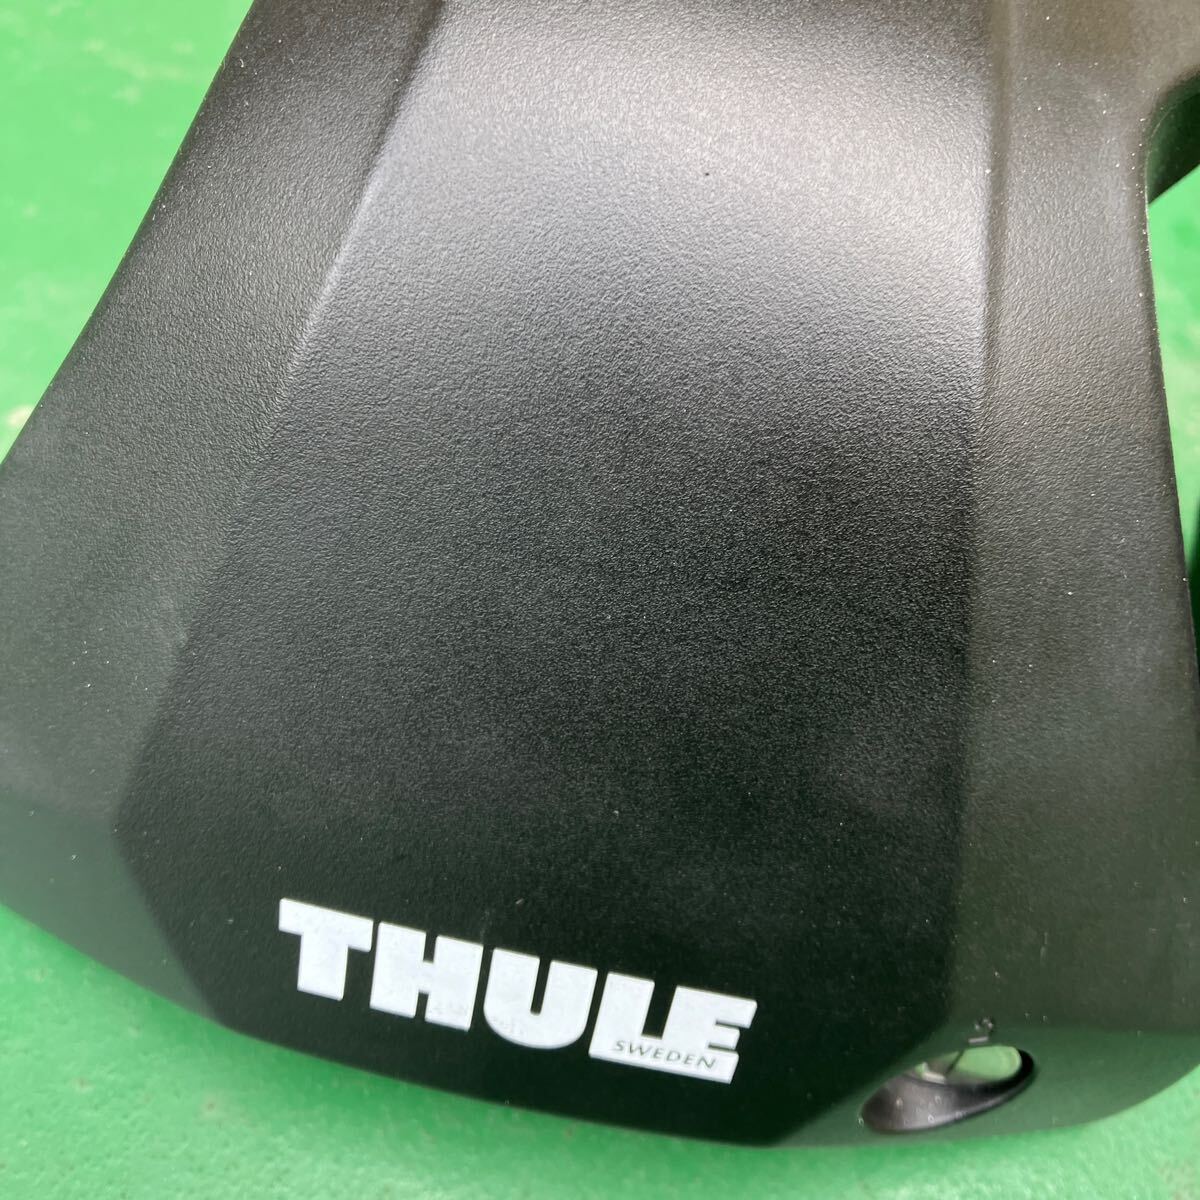 THULE トヨタ プリウス 30系用 キャリアベースセット (フット7205+バー7215B+7214B+キット5001) ウイングバーエッジ TOYOTA 30 Prius_薄いスレあり